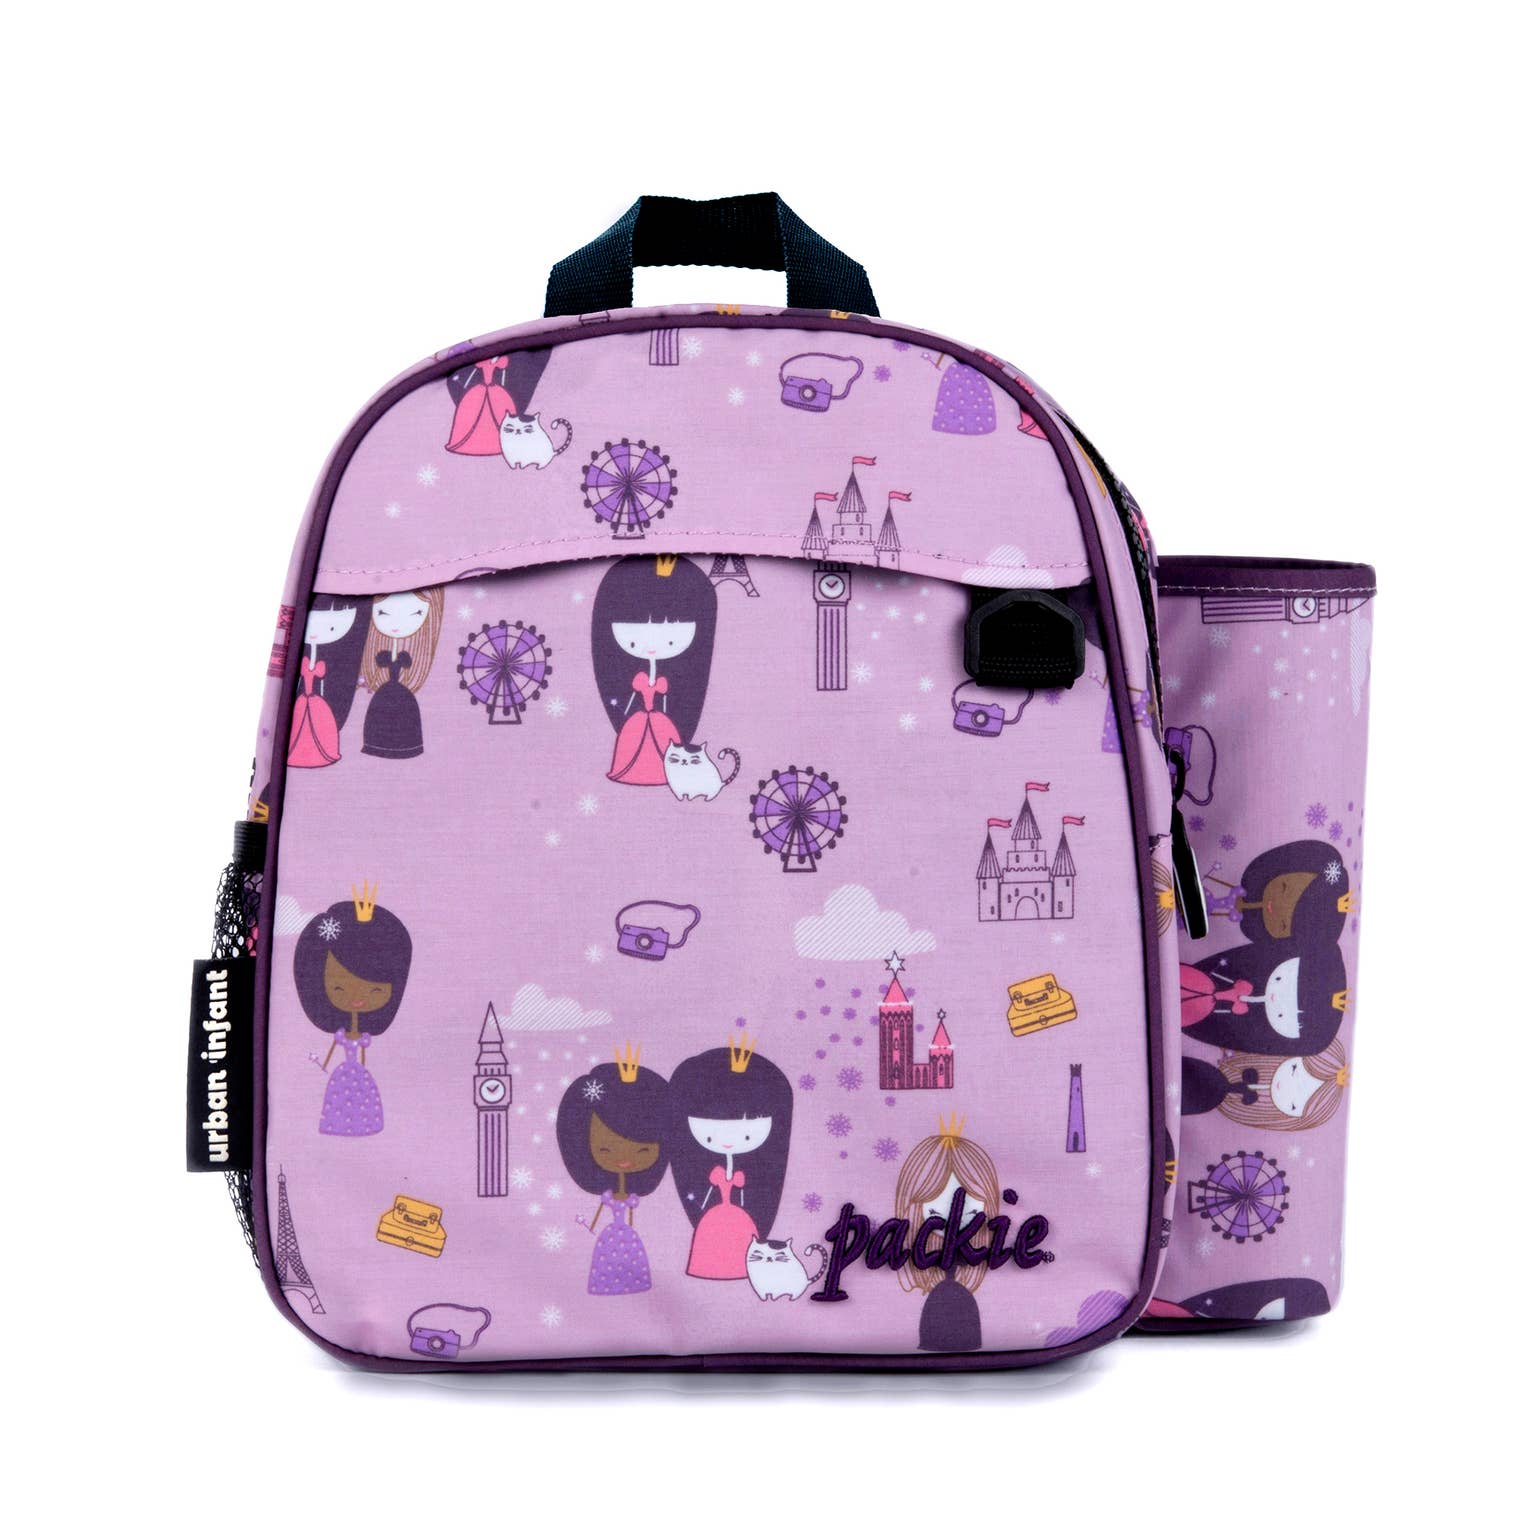 Urban Infant Packie Toddler Backpack - Violet